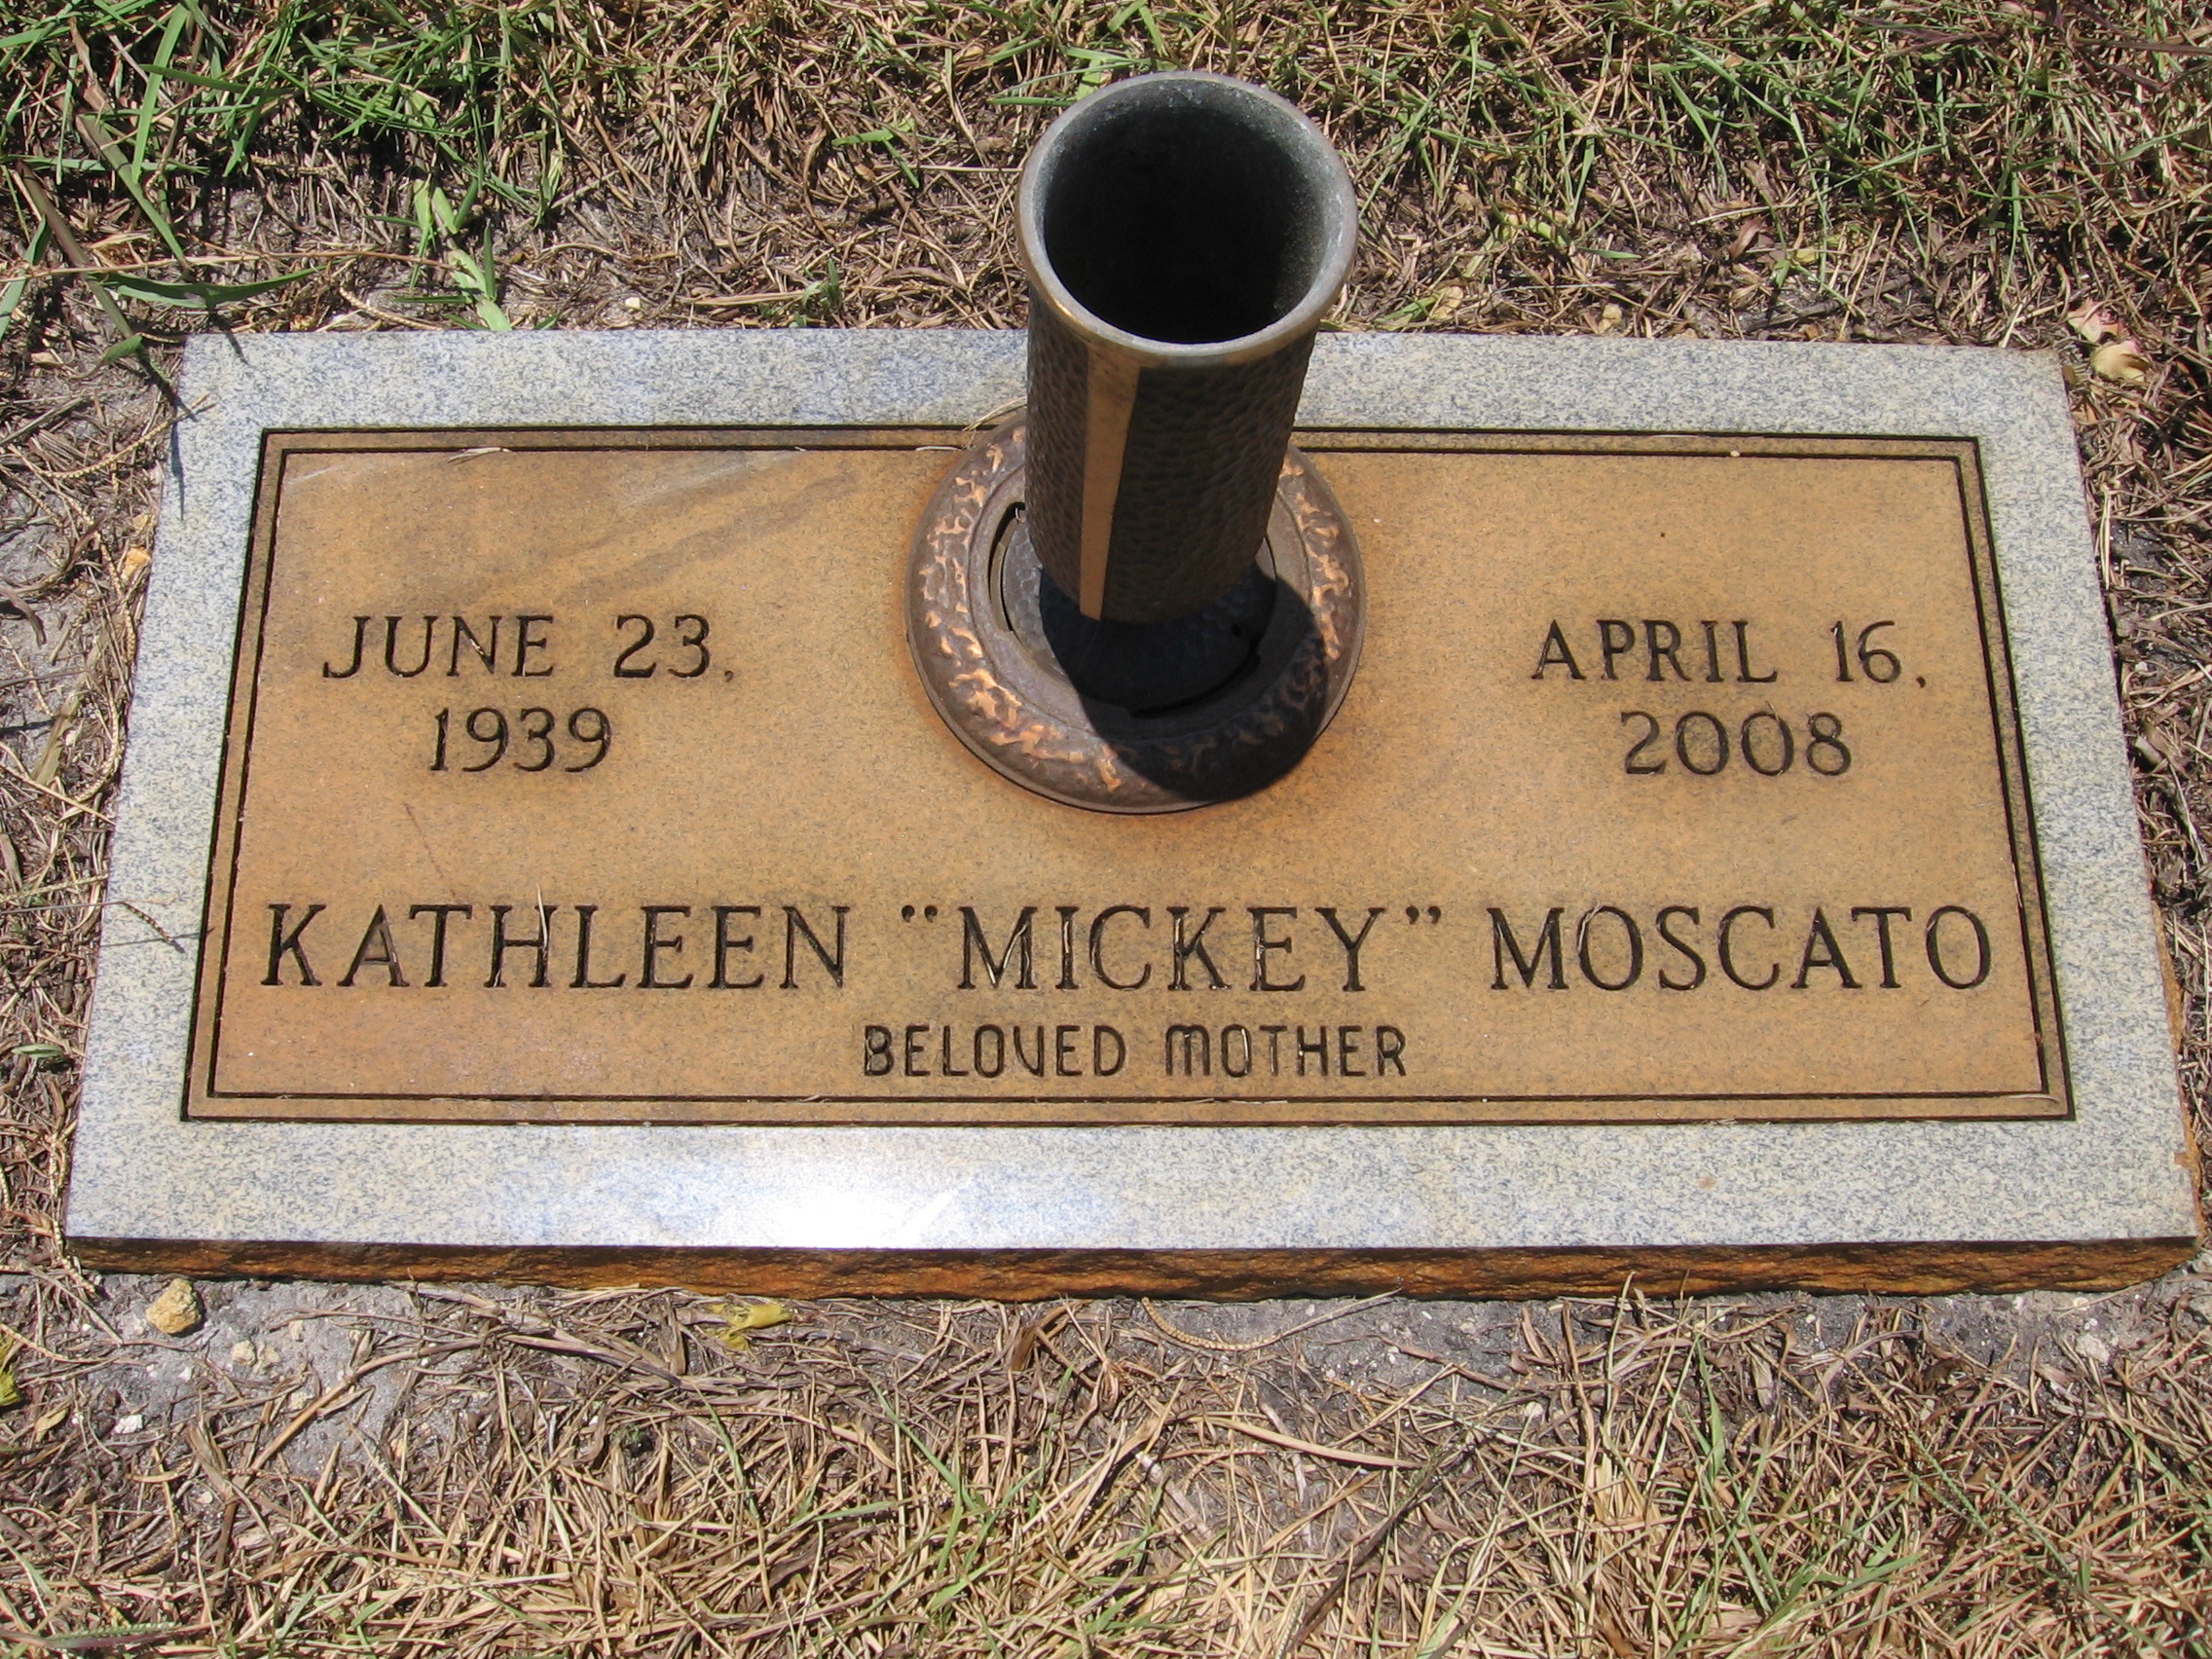 Kathleen "Mickey" Moscato